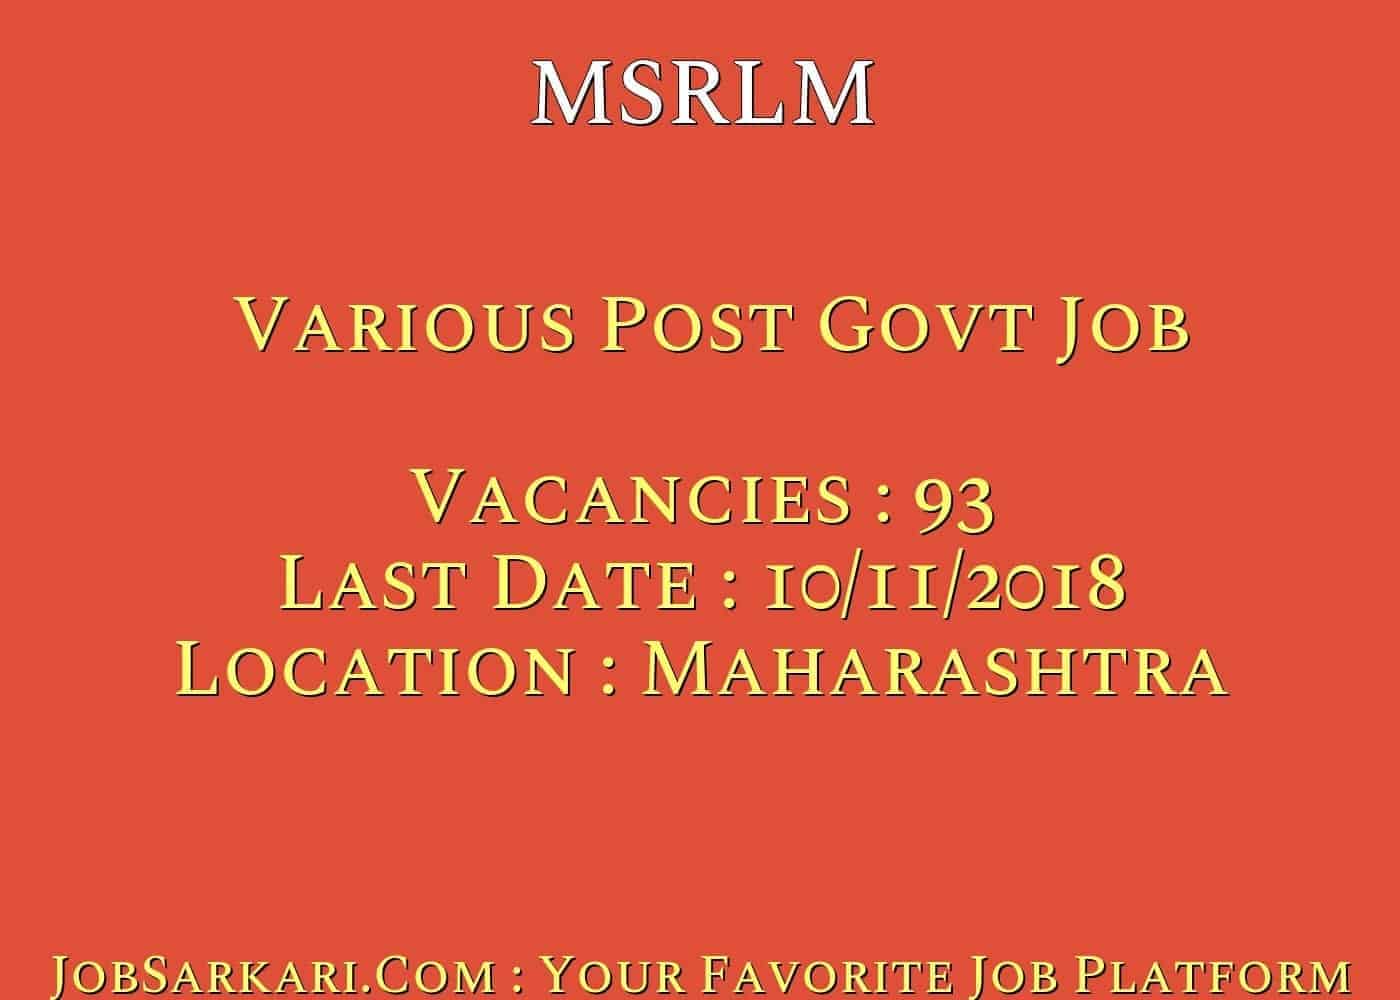 MSRLM Recruitment 2018 for Various Post Govt Job